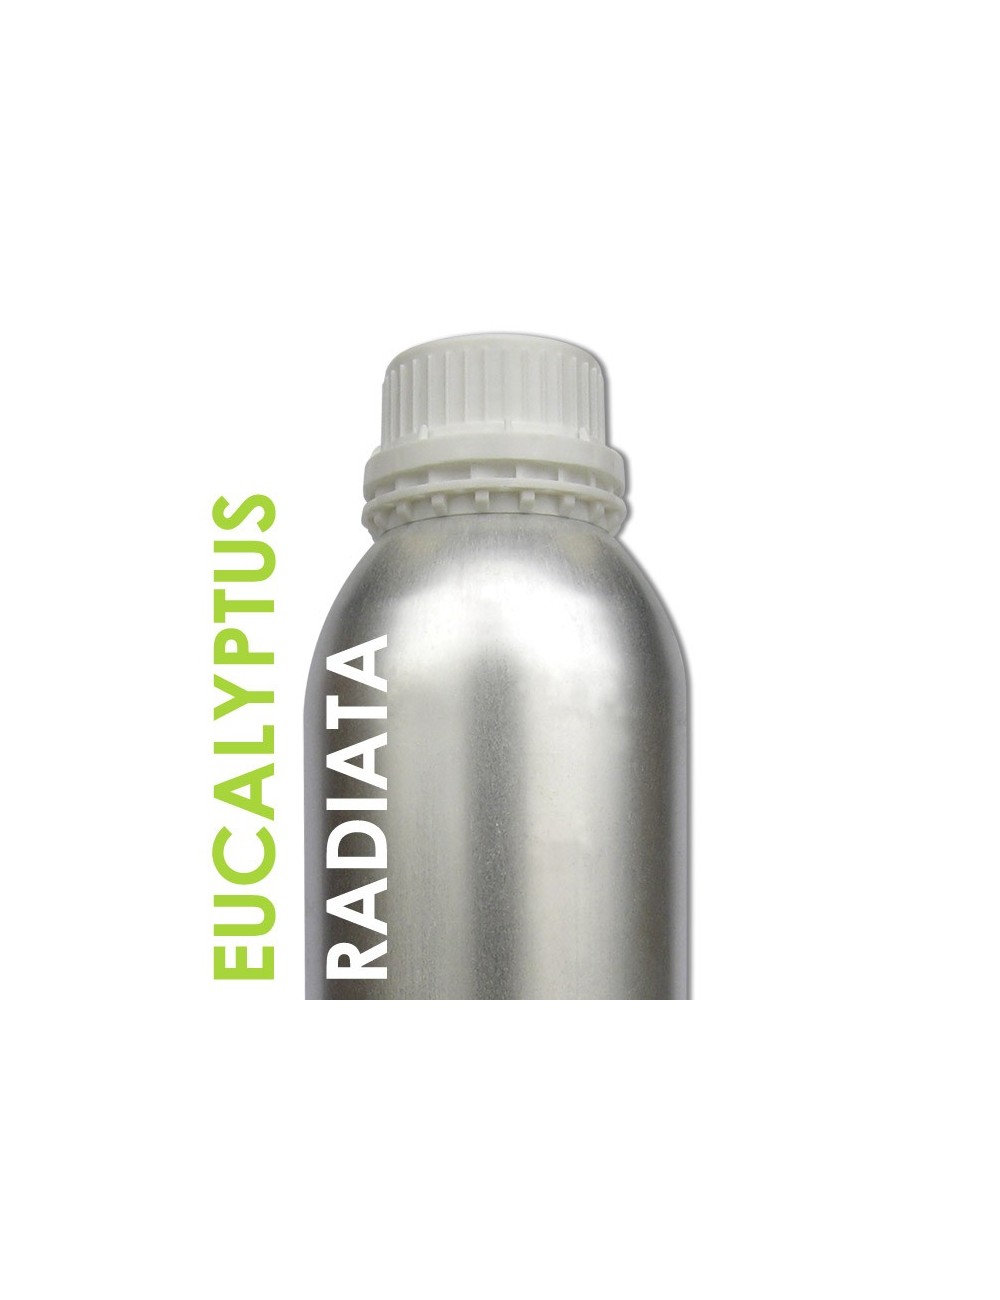 Eucalyptus Radiata Huile essentielle 1 Litre Ecocertifiable